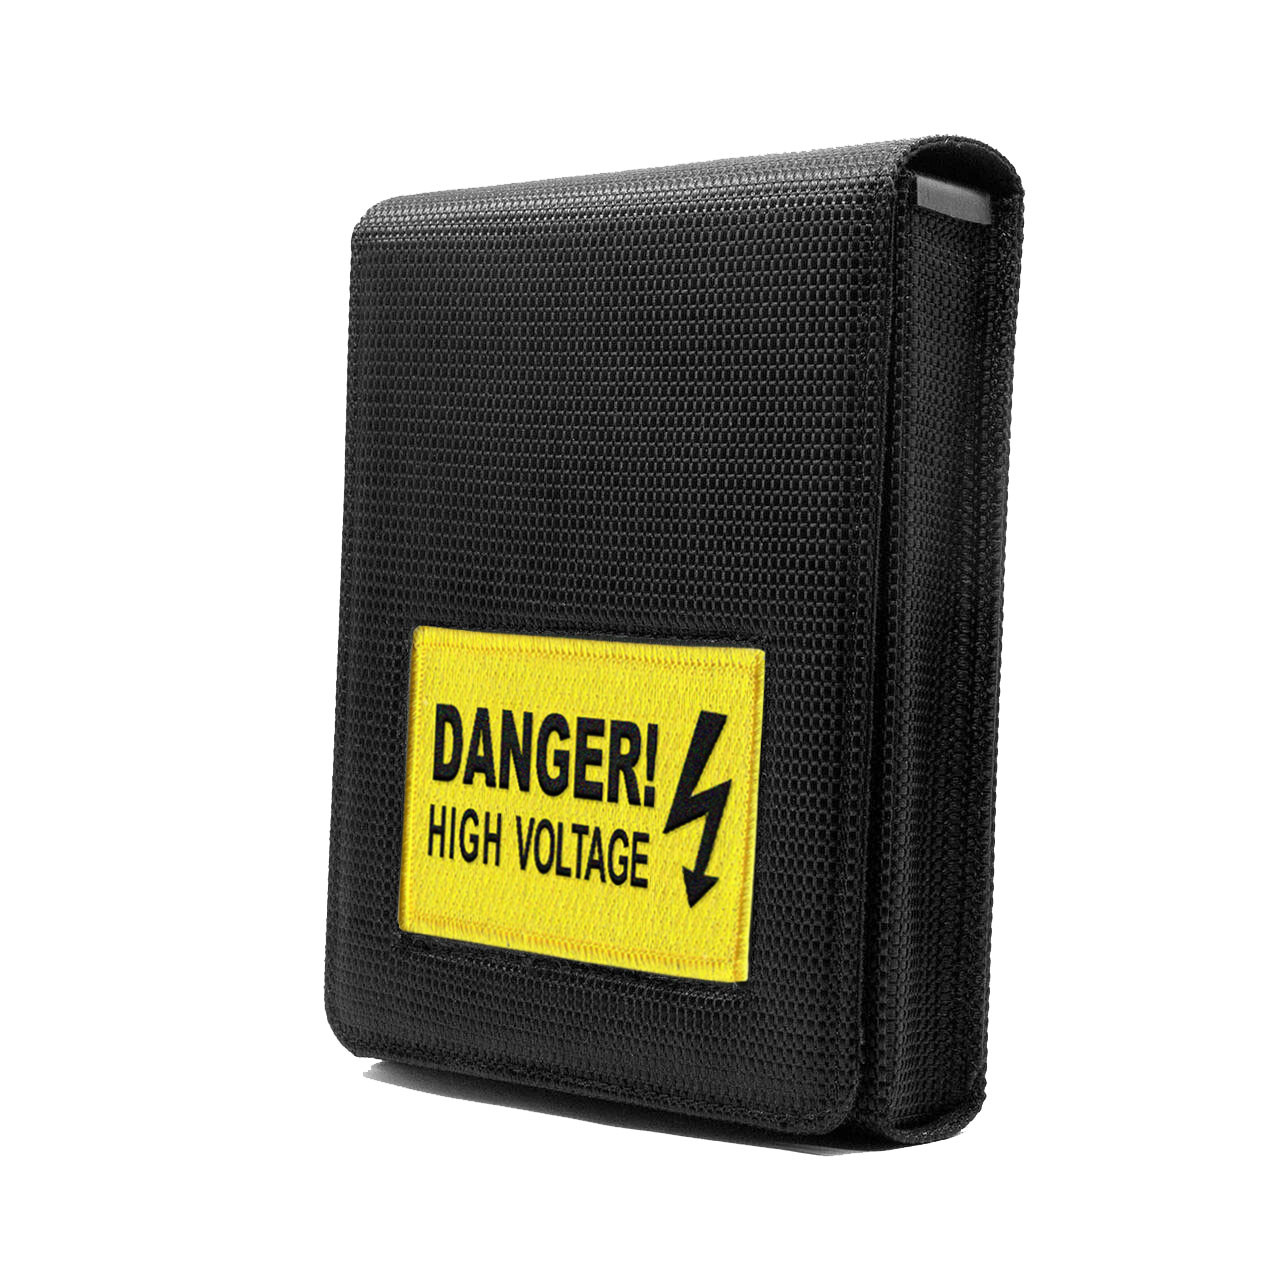 Sig P365 Danger High Voltage Tactical Holster